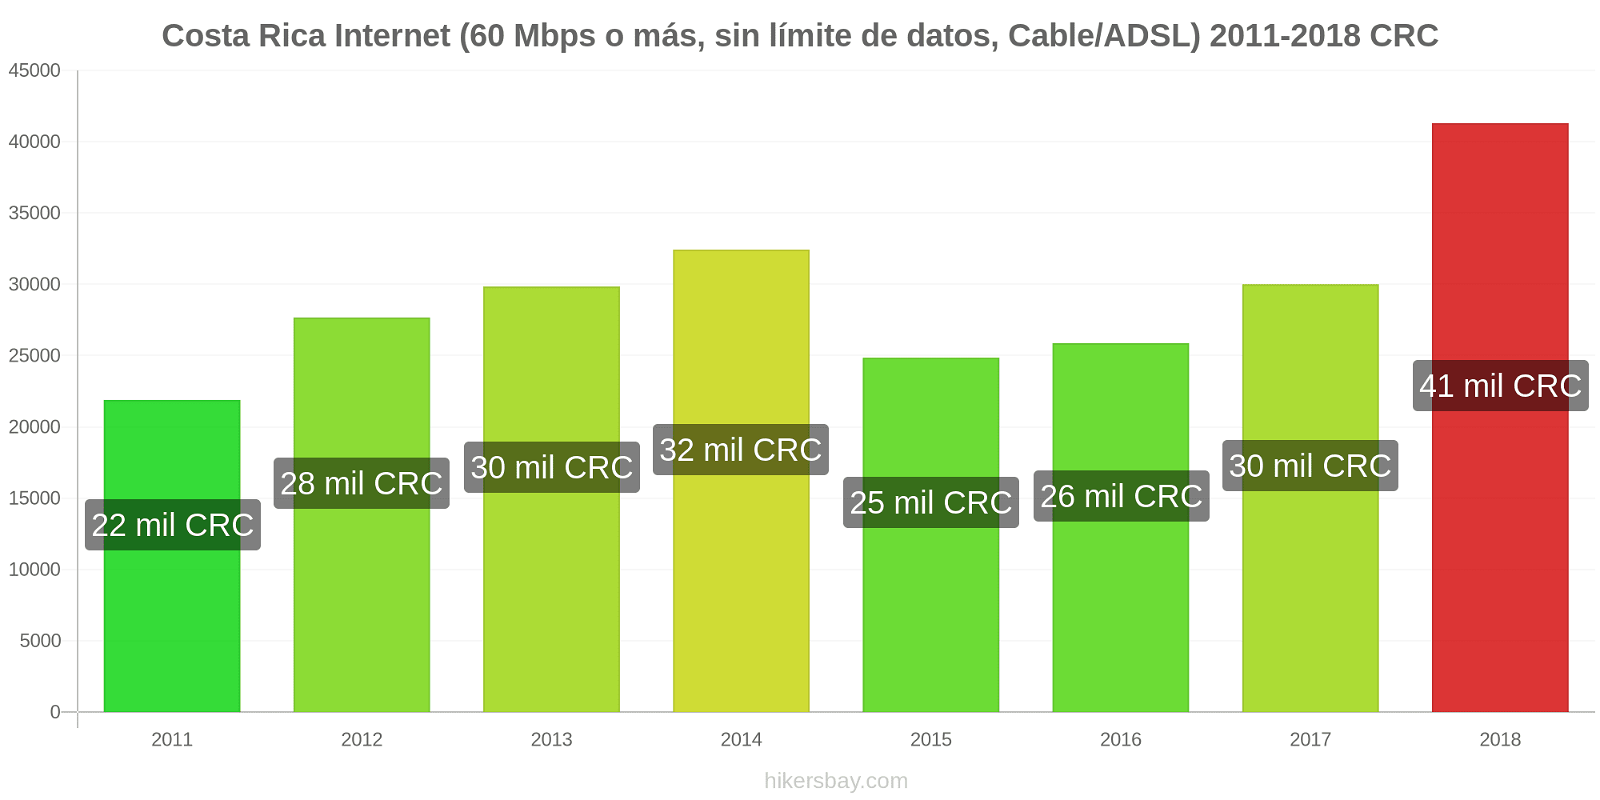 Costa Rica cambios de precios Internet (60 Mbps o más, datos ilimitados, cable/ADSL) hikersbay.com